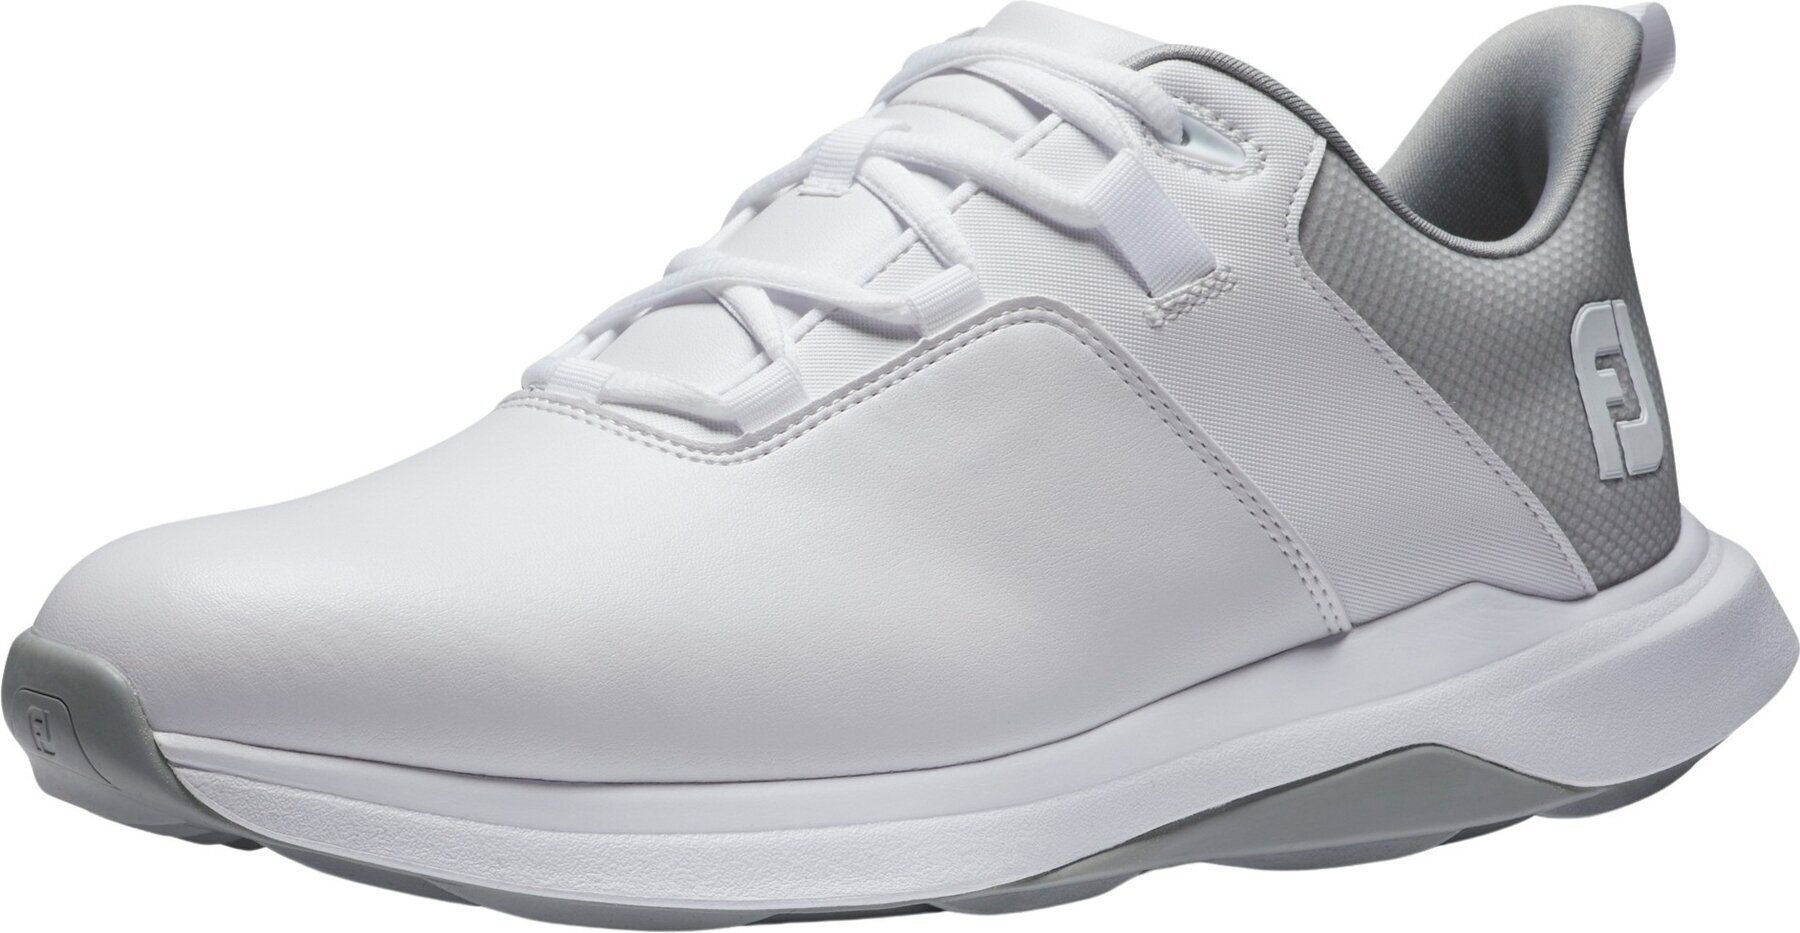 Chaussures de golf pour hommes Footjoy ProLite Mens Golf Shoes White/Grey 46